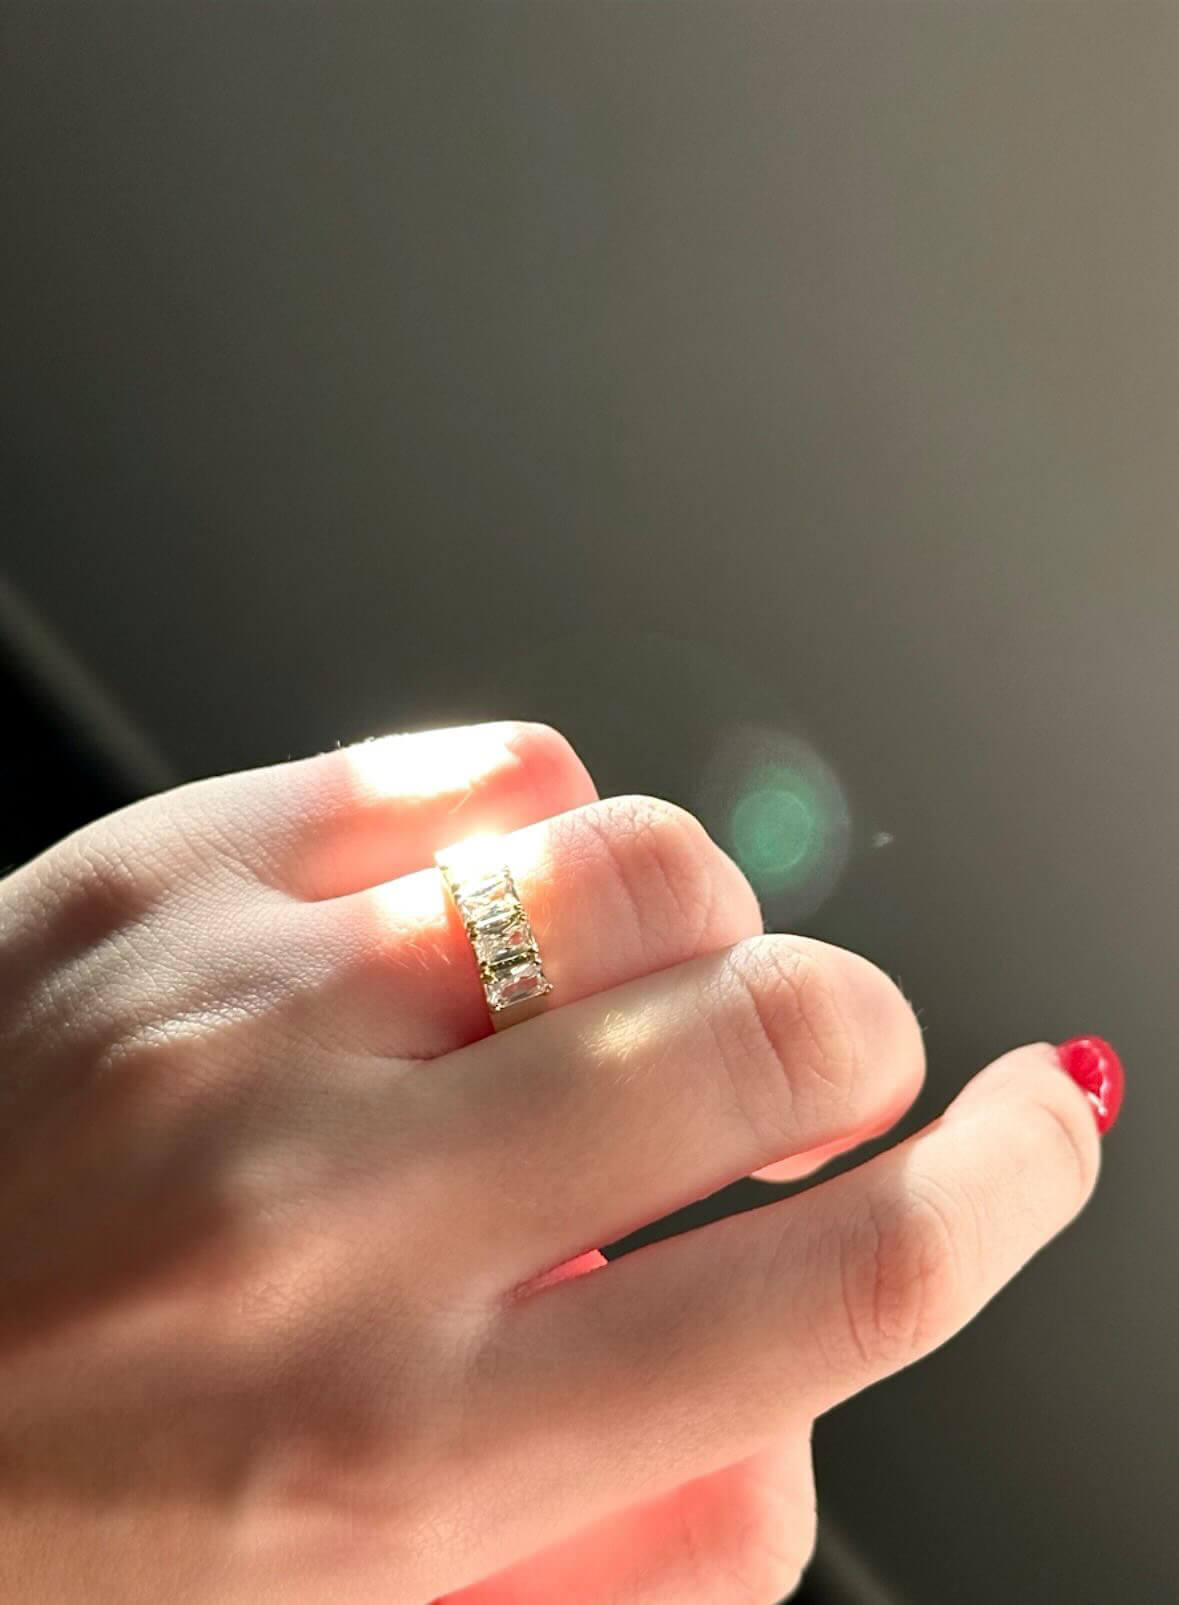 Phoebe Zircon Ring